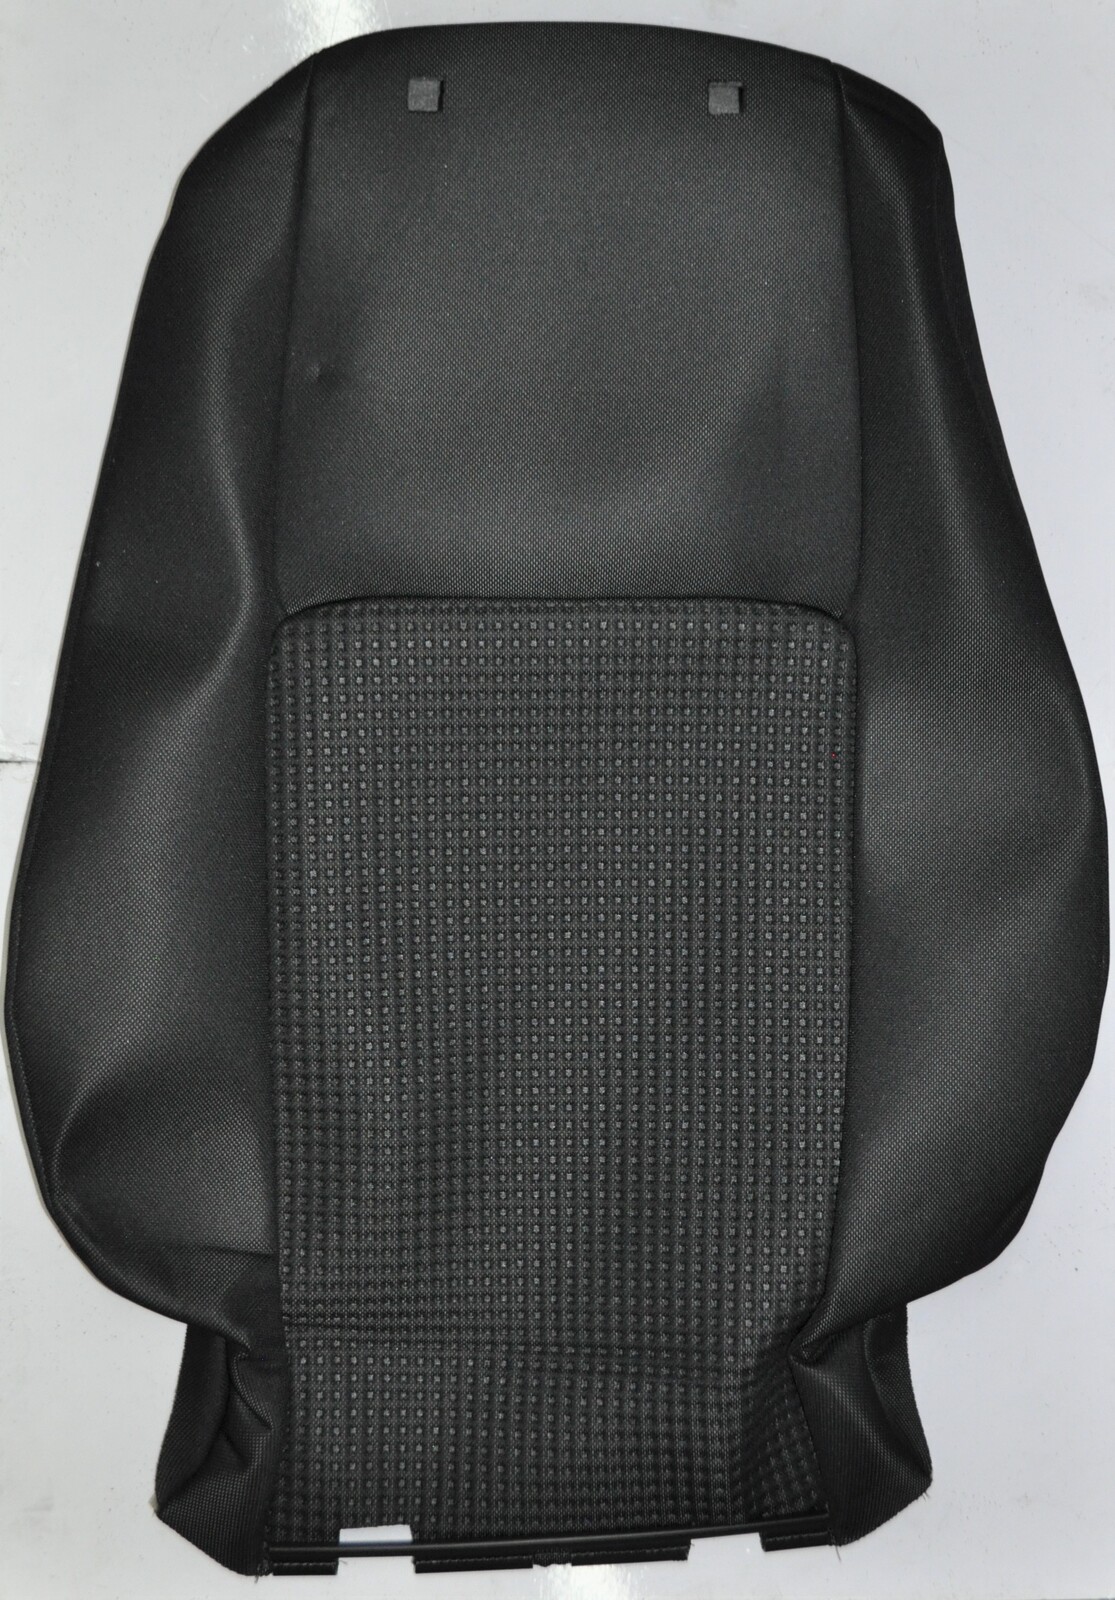 Holden VE SV6 Ute Left Front Cloth Seat Upright Trim Black